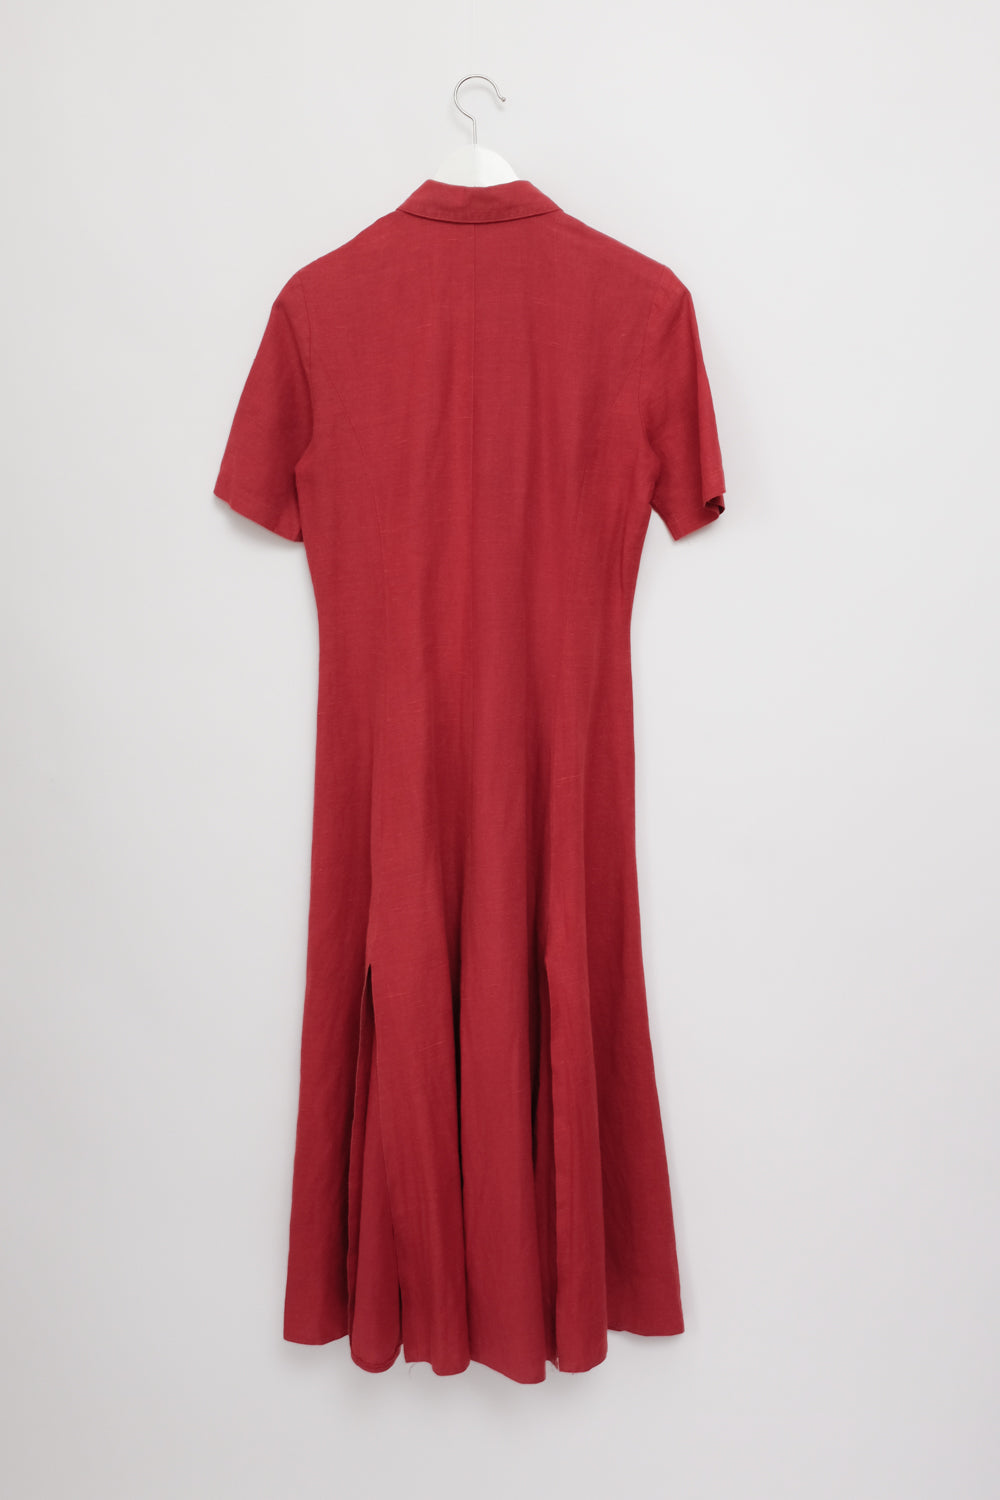 PURE LINEN RED LONG SHIRT DRESS